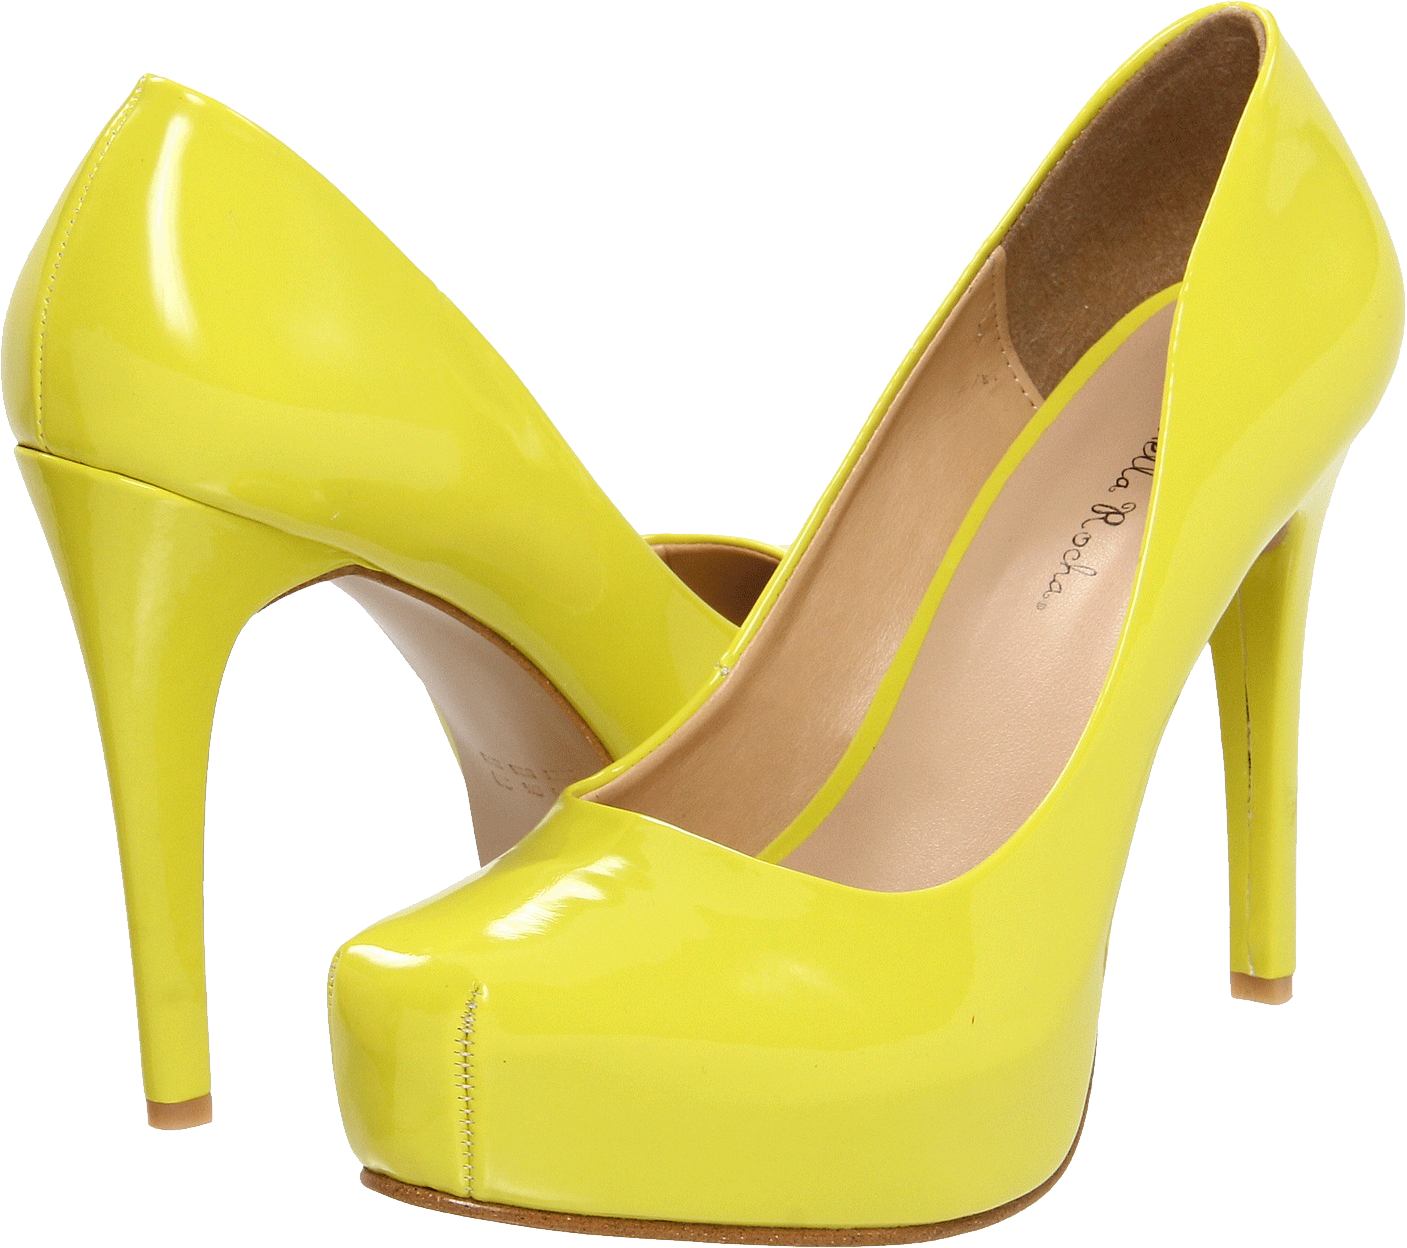 Yellow Women Shoe PNG Image